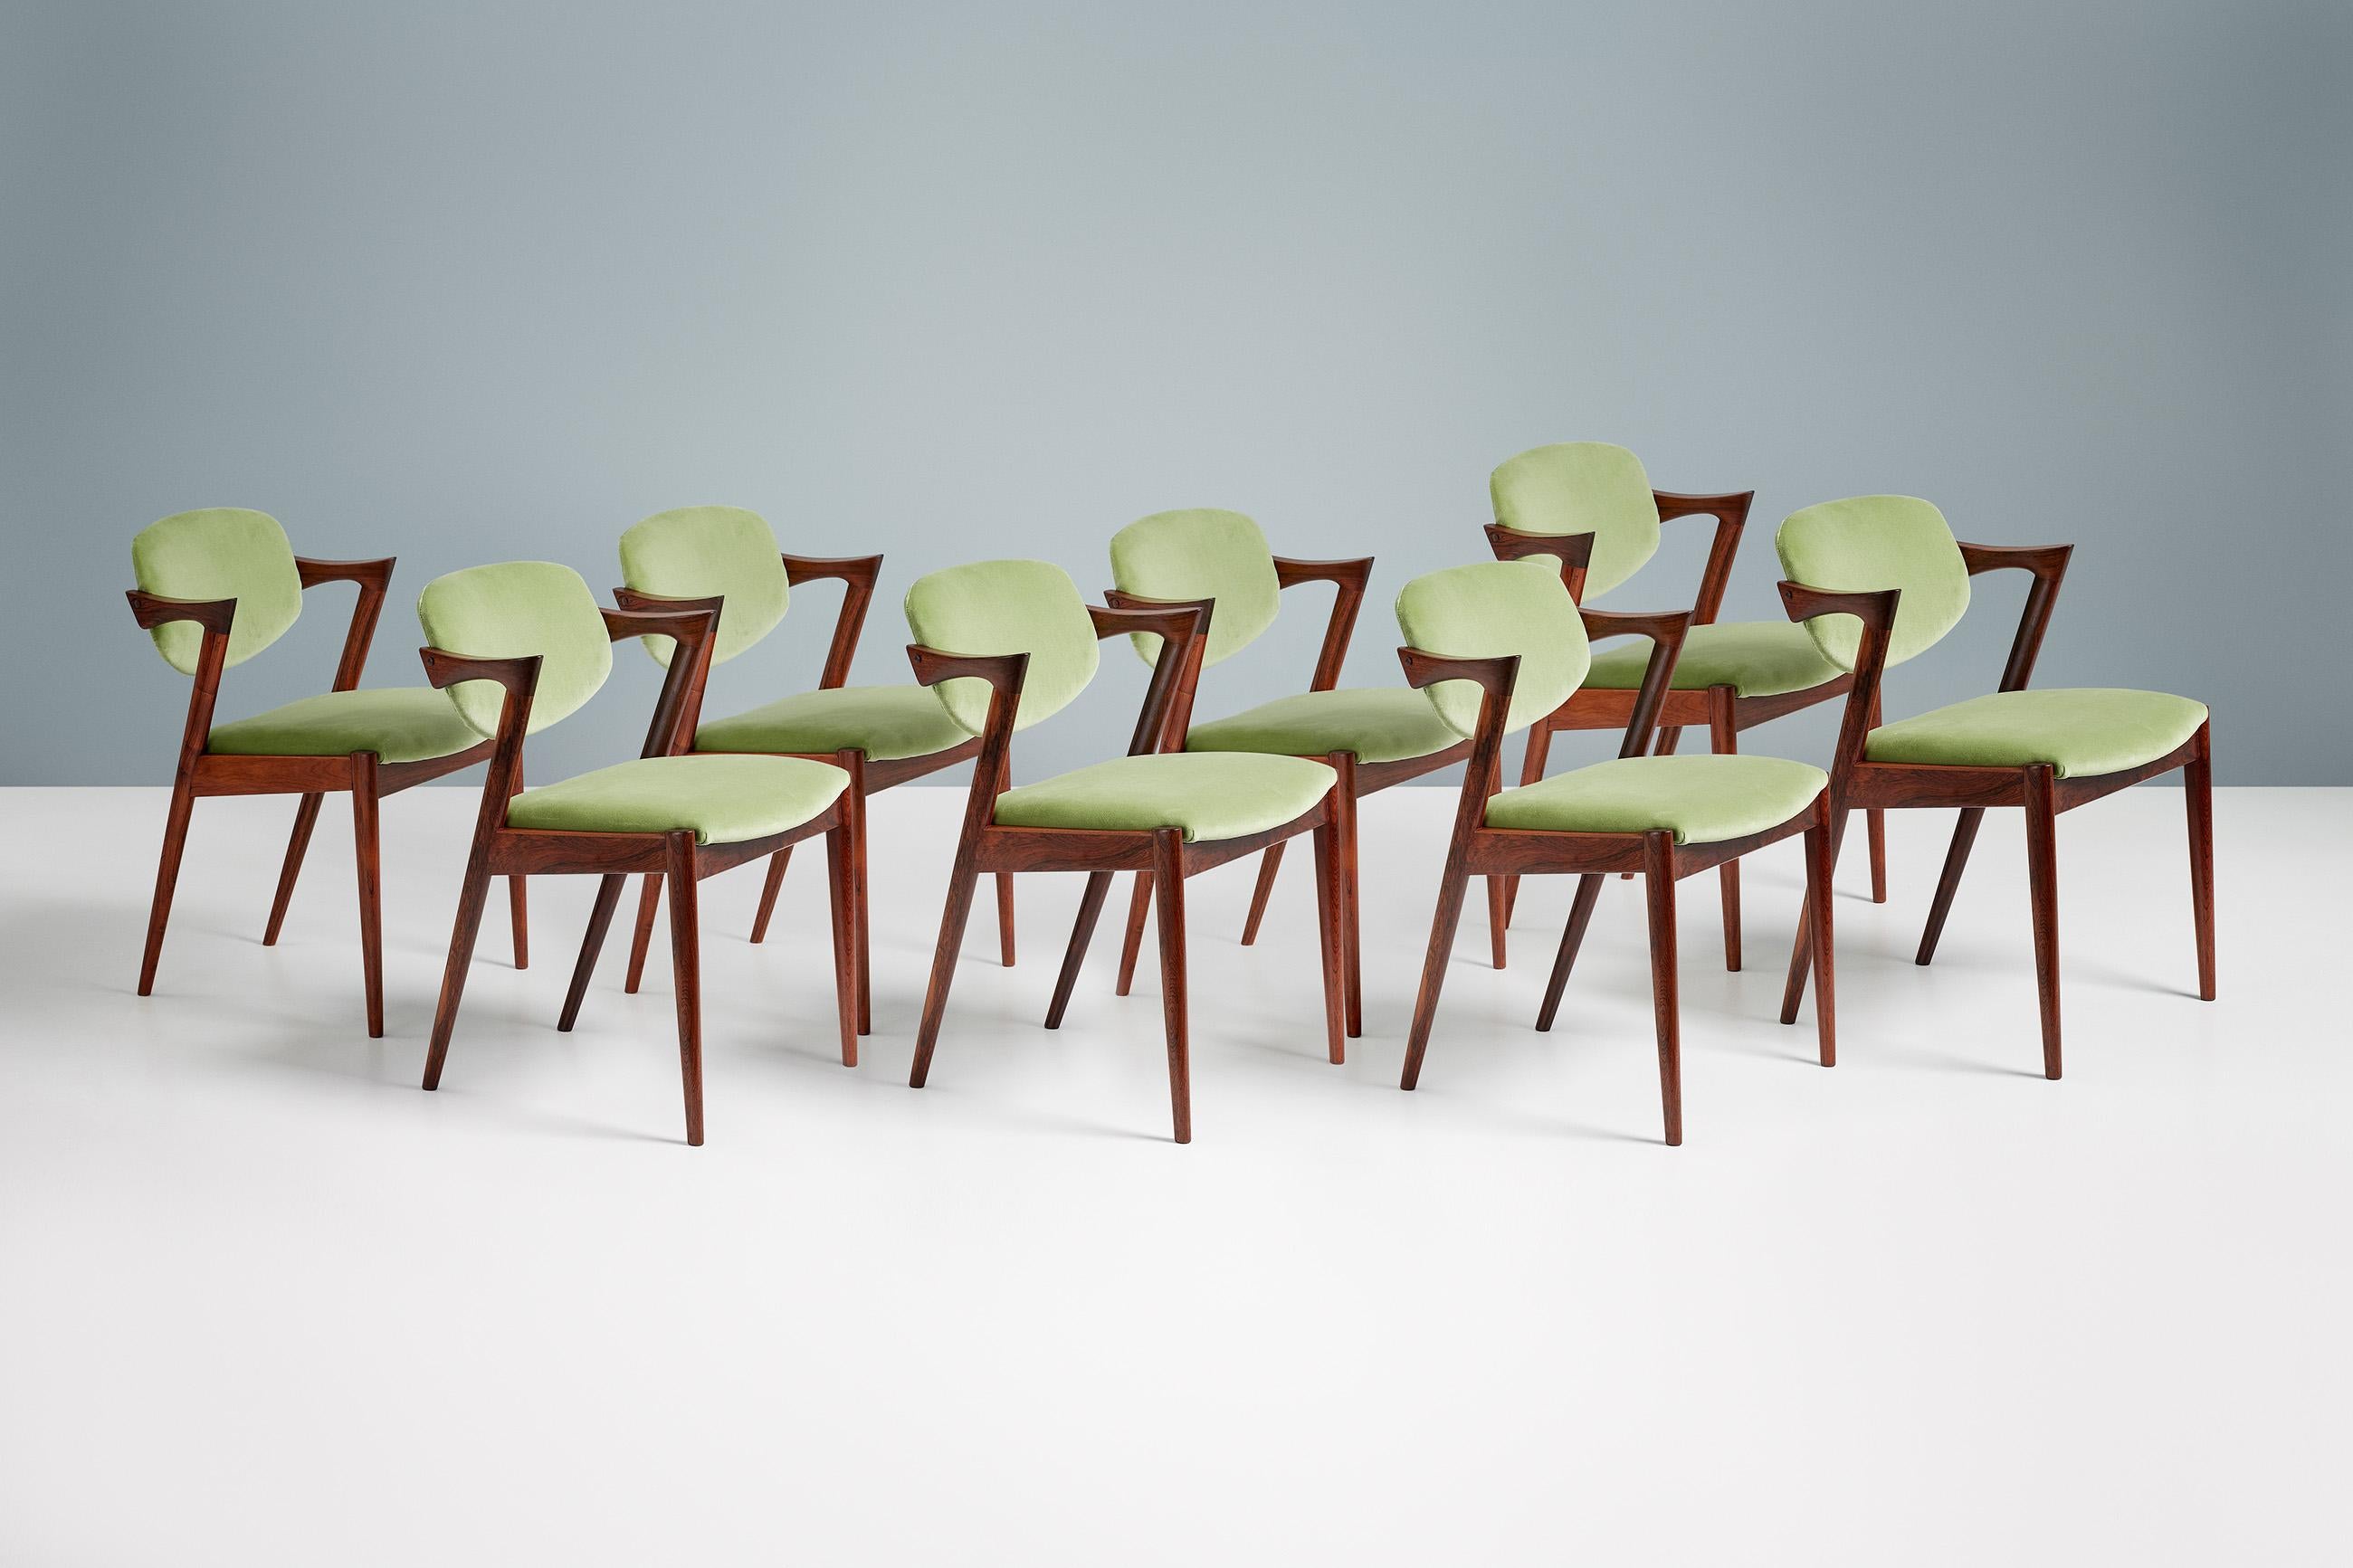 Kai Kristiansen - Chaises de salle à manger modèle 42, 1956.

Ensemble de 8 chaises de salle à manger produites par Skovman Andersen pour le grand magasin Illum Bolighus à Copenhague. Les cadres sont fabriqués à partir de bois de rose de la plus